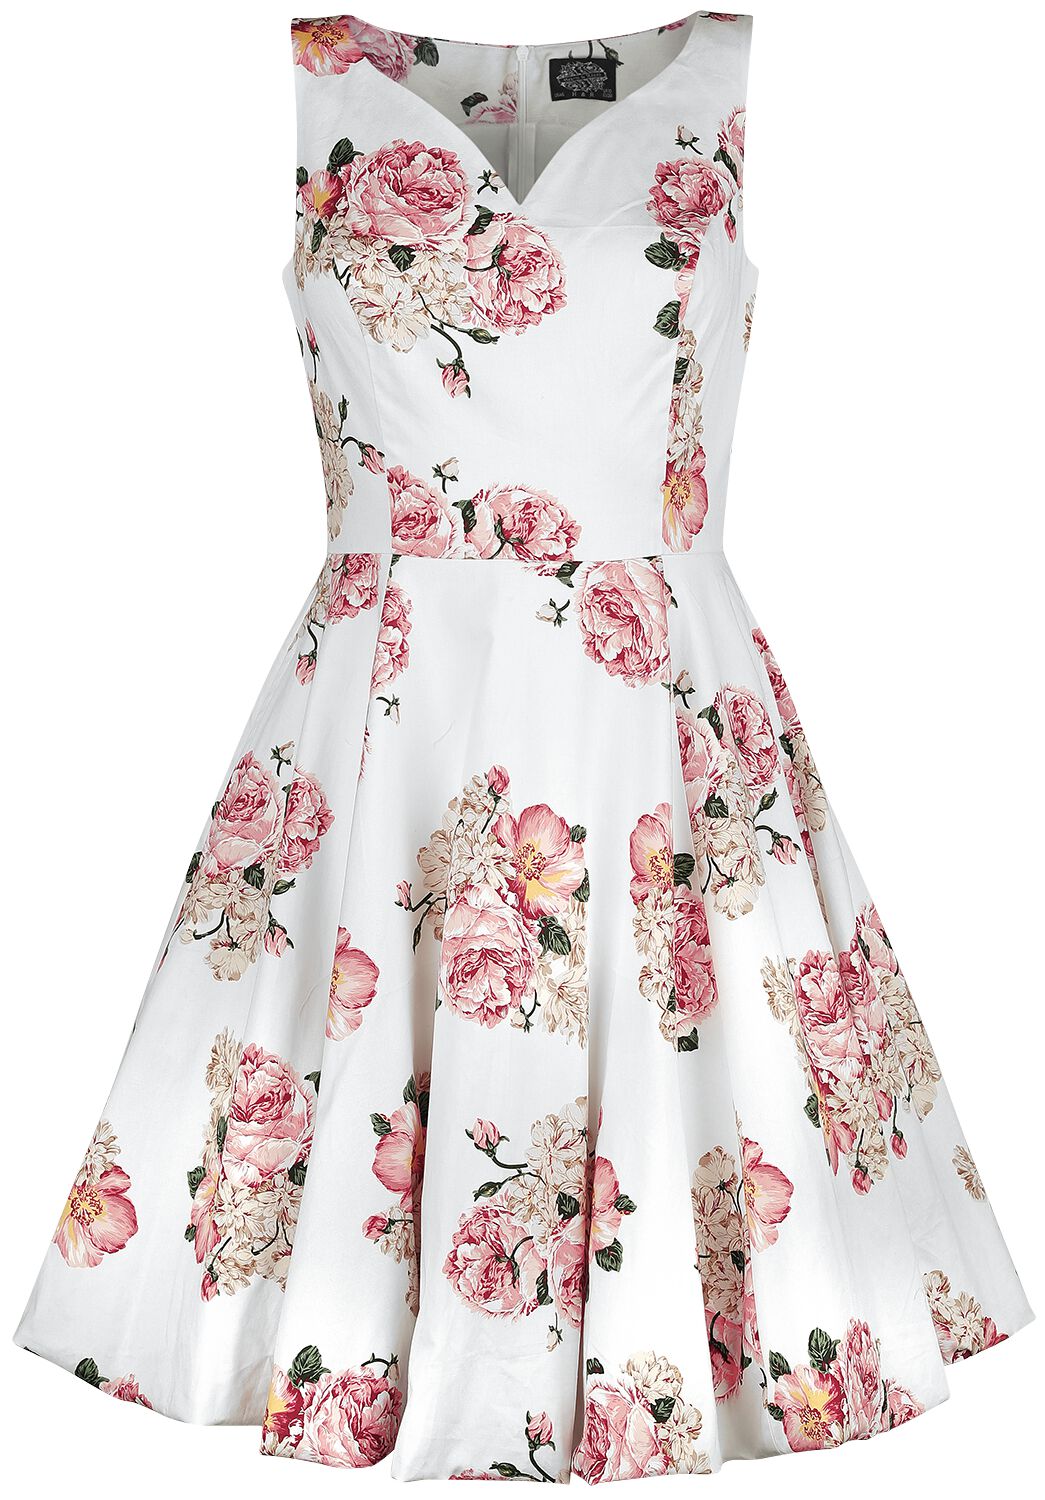 H&R London Taraneh Swing Dress Mittellanges Kleid weiß rosa in S